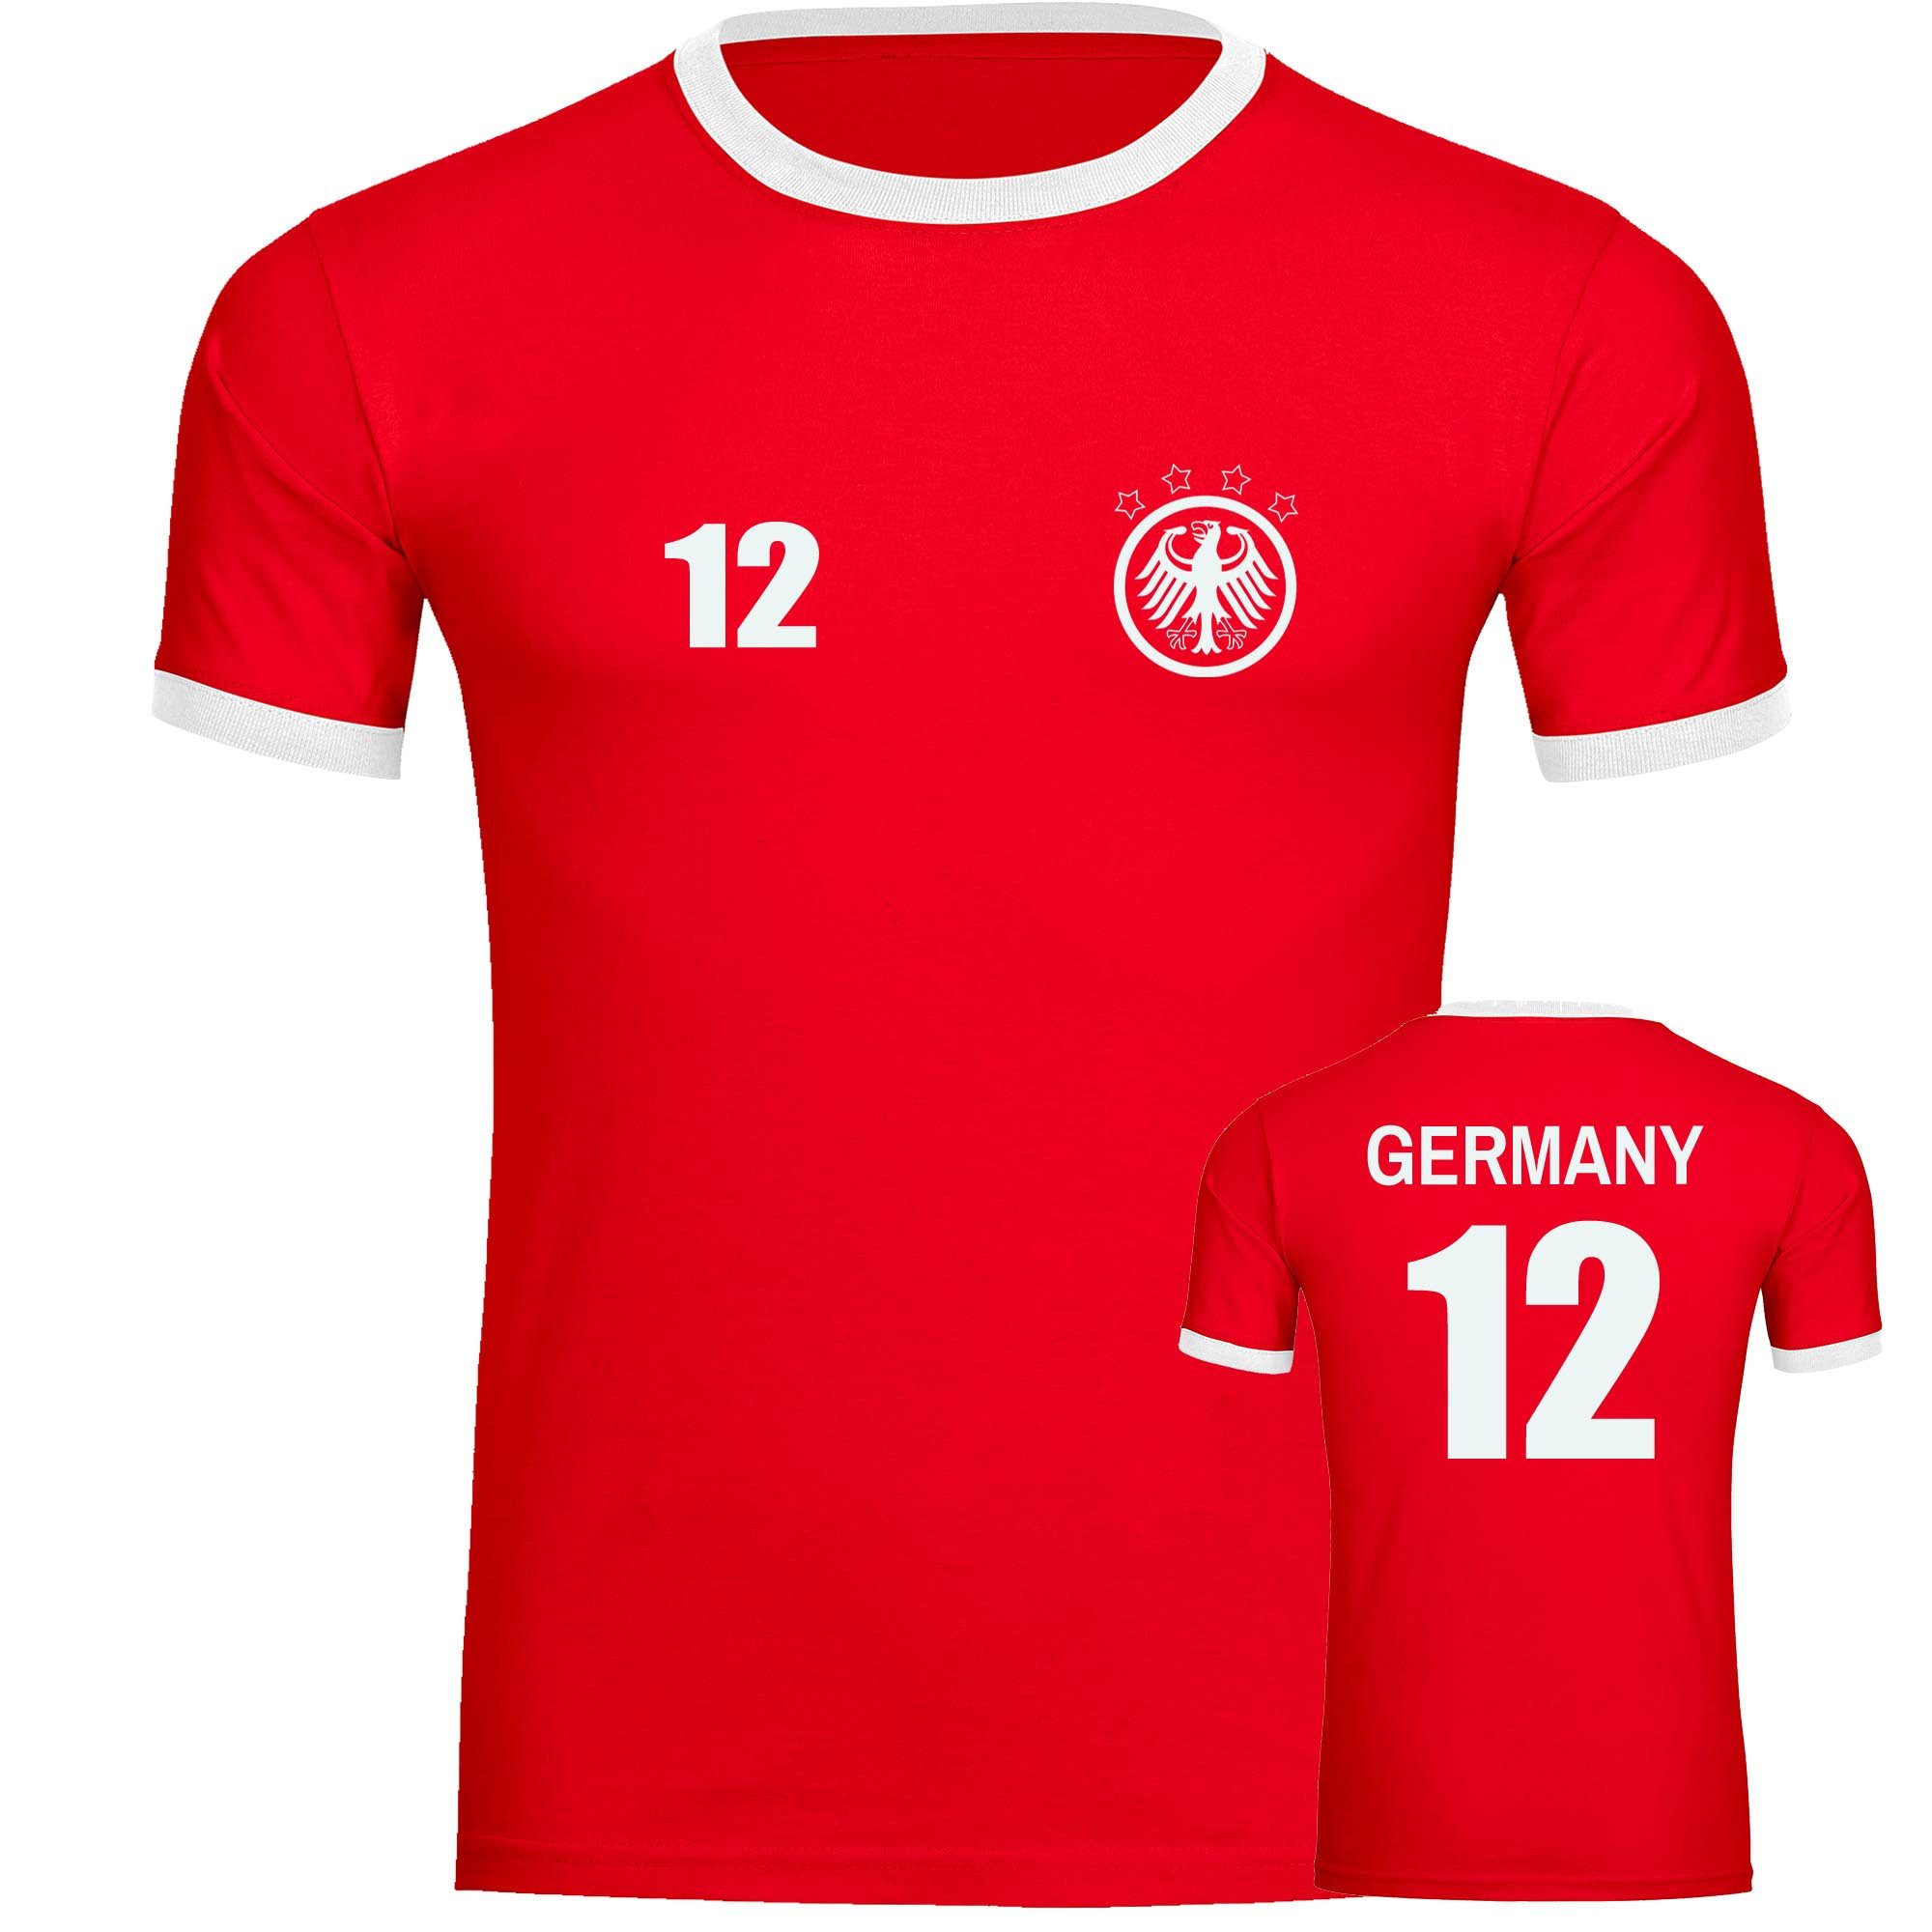 multifanshop T-Shirt Kontrast Germany - Adler Retro Trikot 12 - Männer